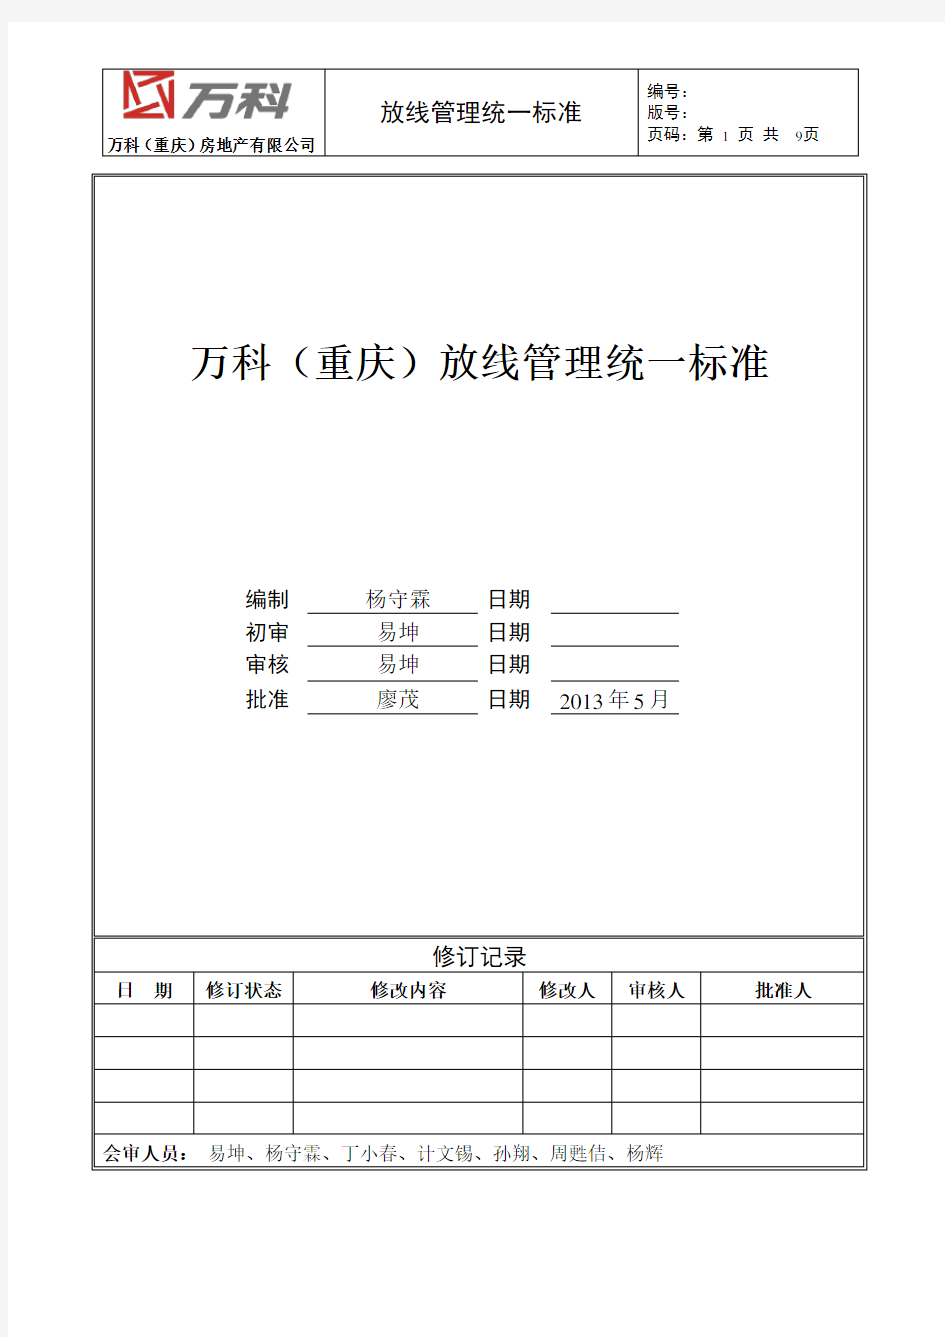 日式放线作业指引(试行版)